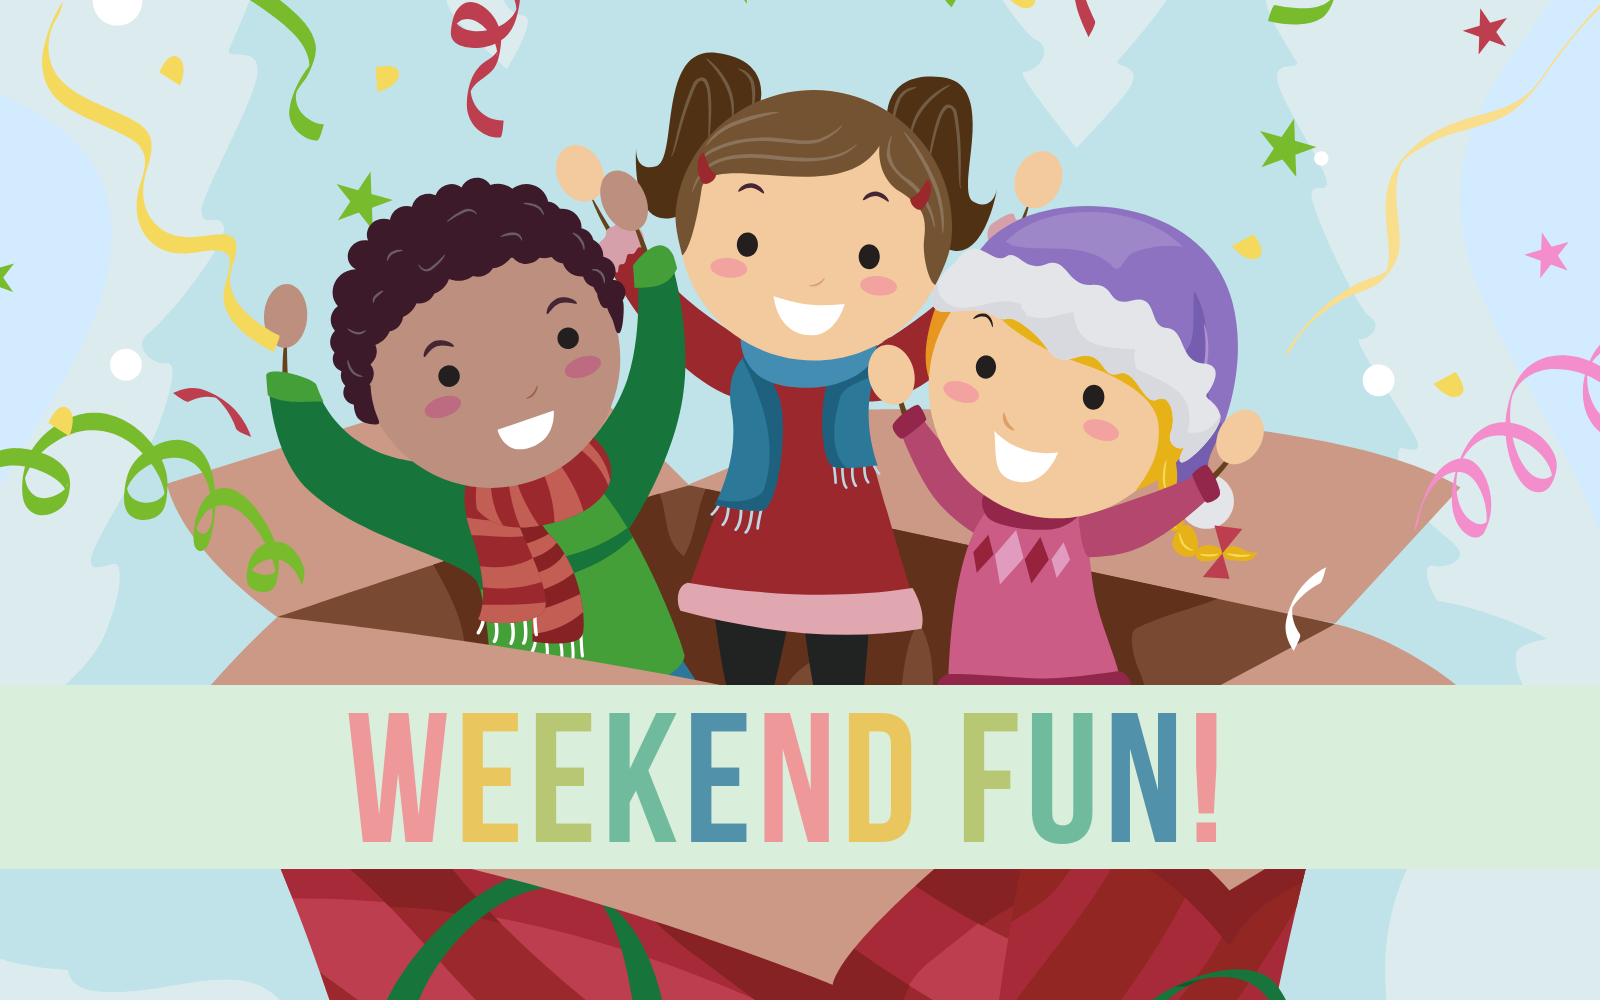 Weekend fun. Weekend картинка для детей. Картинки weekend семьи. Fun weekends.